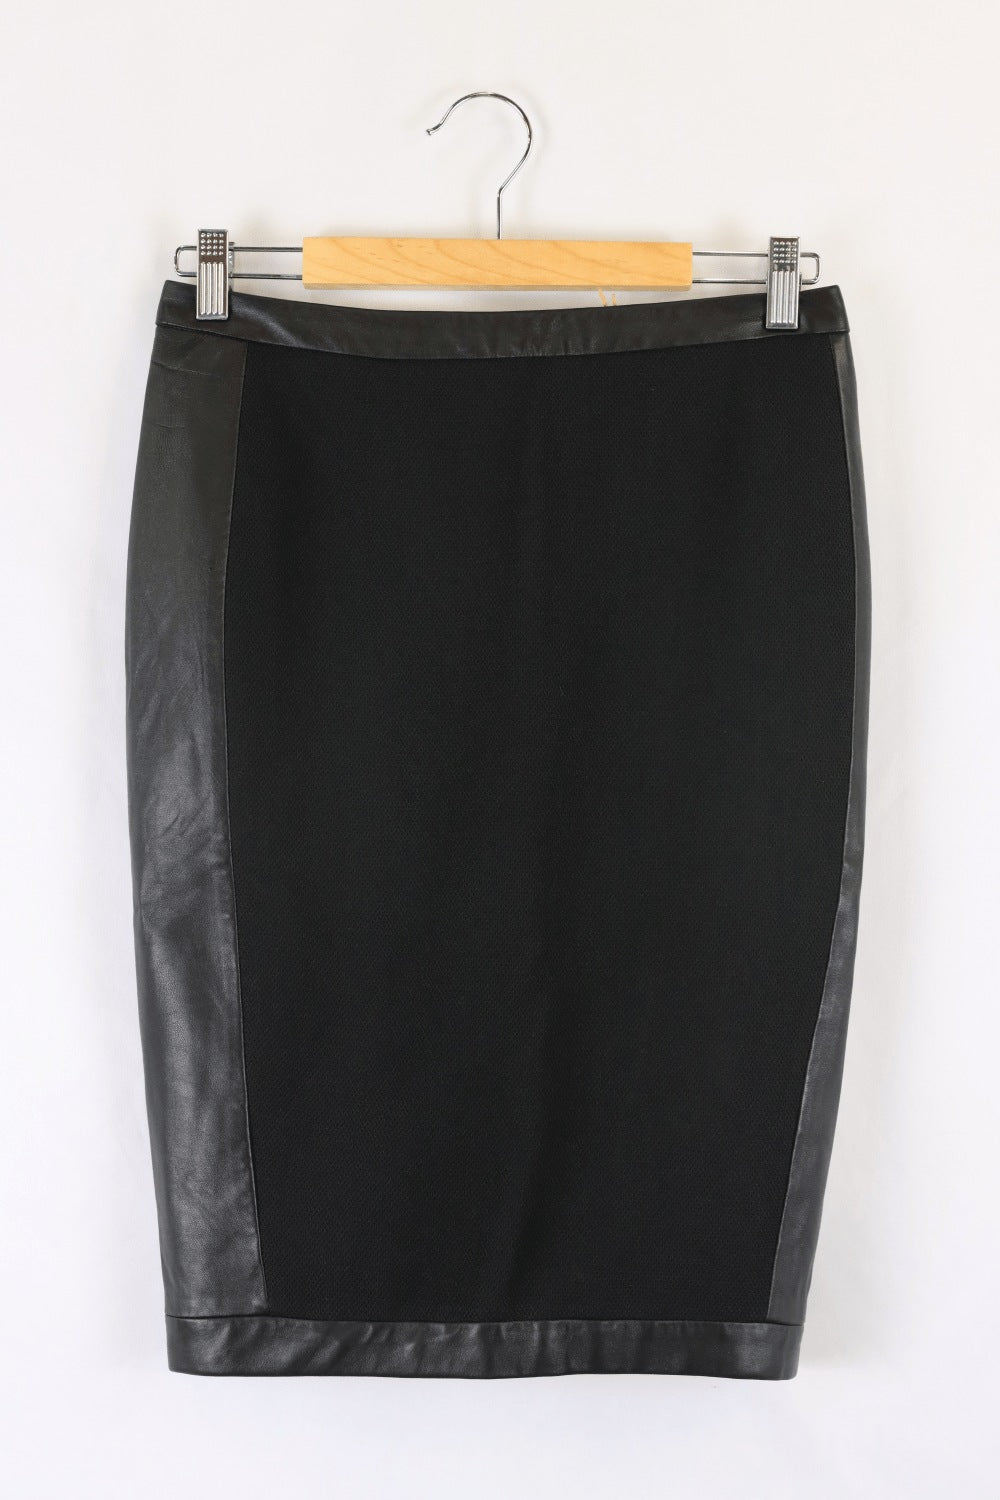 Arthur Galan Black Skirt 8